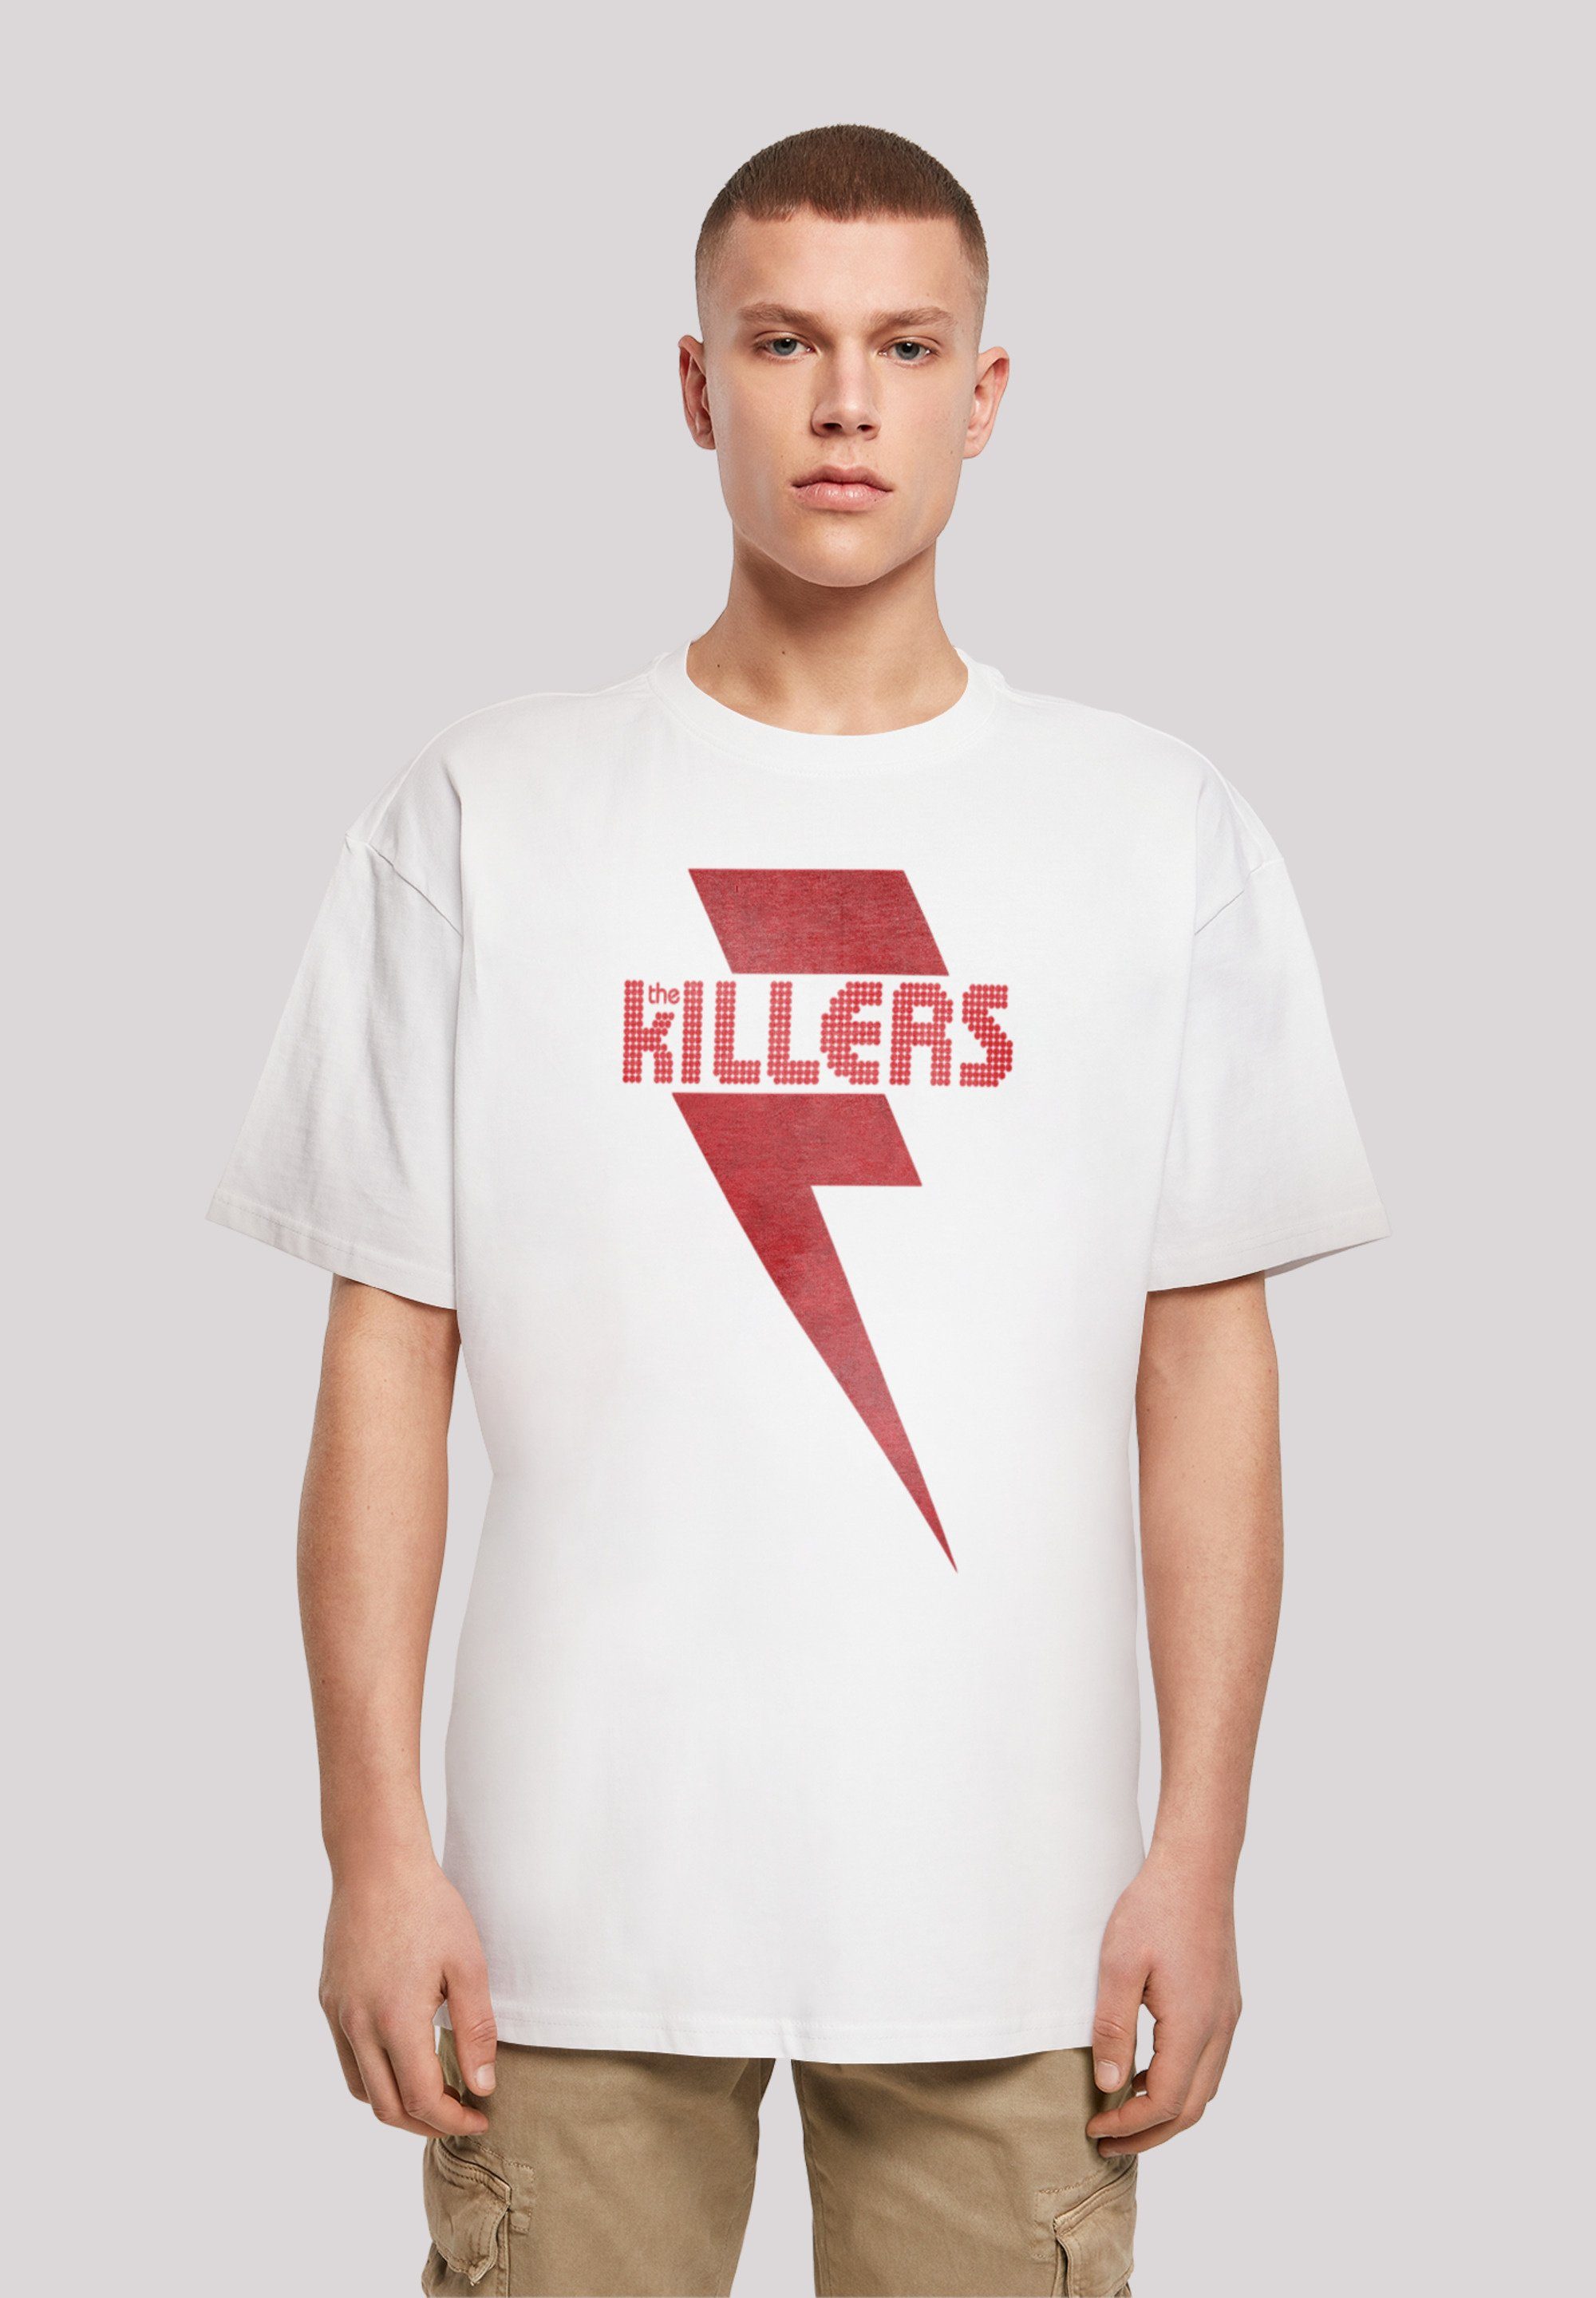 The überschnittene Passform Bolt Rock Killers F4NT4STIC und Band T-Shirt Print, Red Weite Schultern